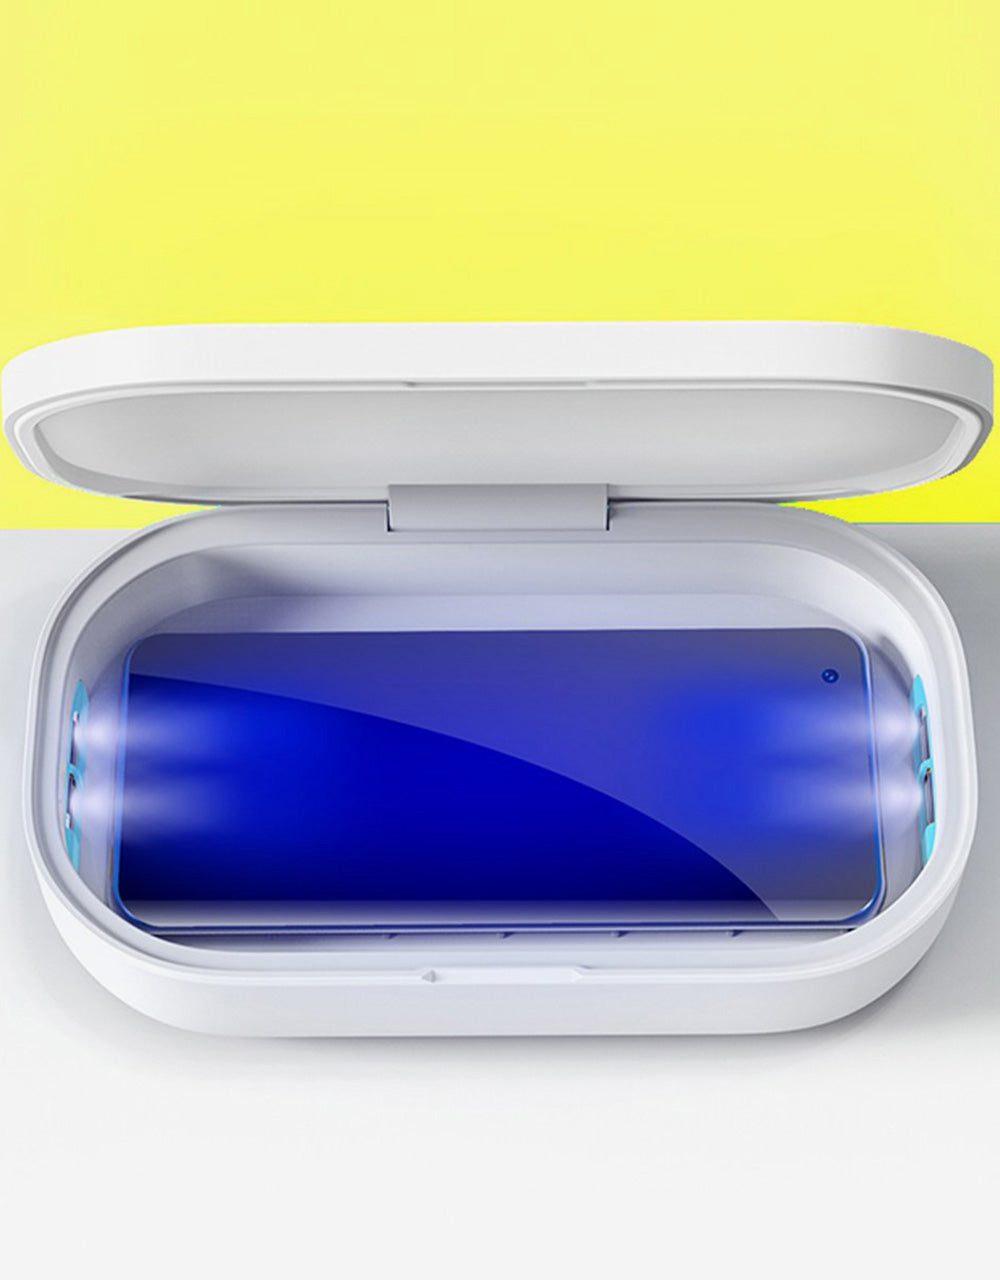 Medipop Magic Box UV Sterilizer - White